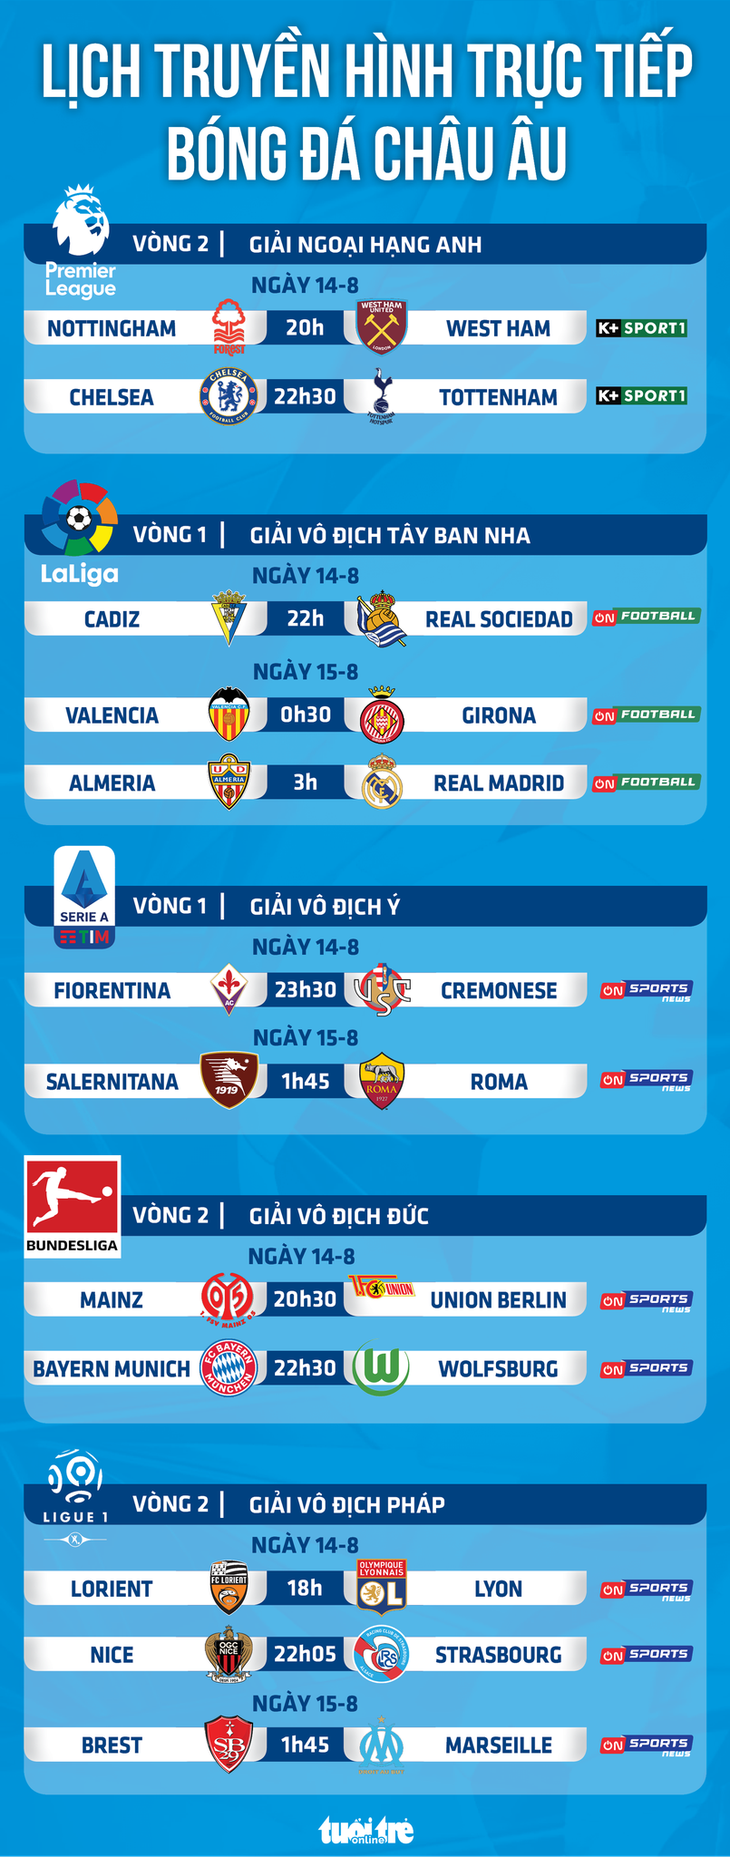 Lịch trực tiếp bóng đá châu Âu ngày 14-8: Chelsea - Tottenham, Real, Bayern và Roma thi đấu - Ảnh 1.